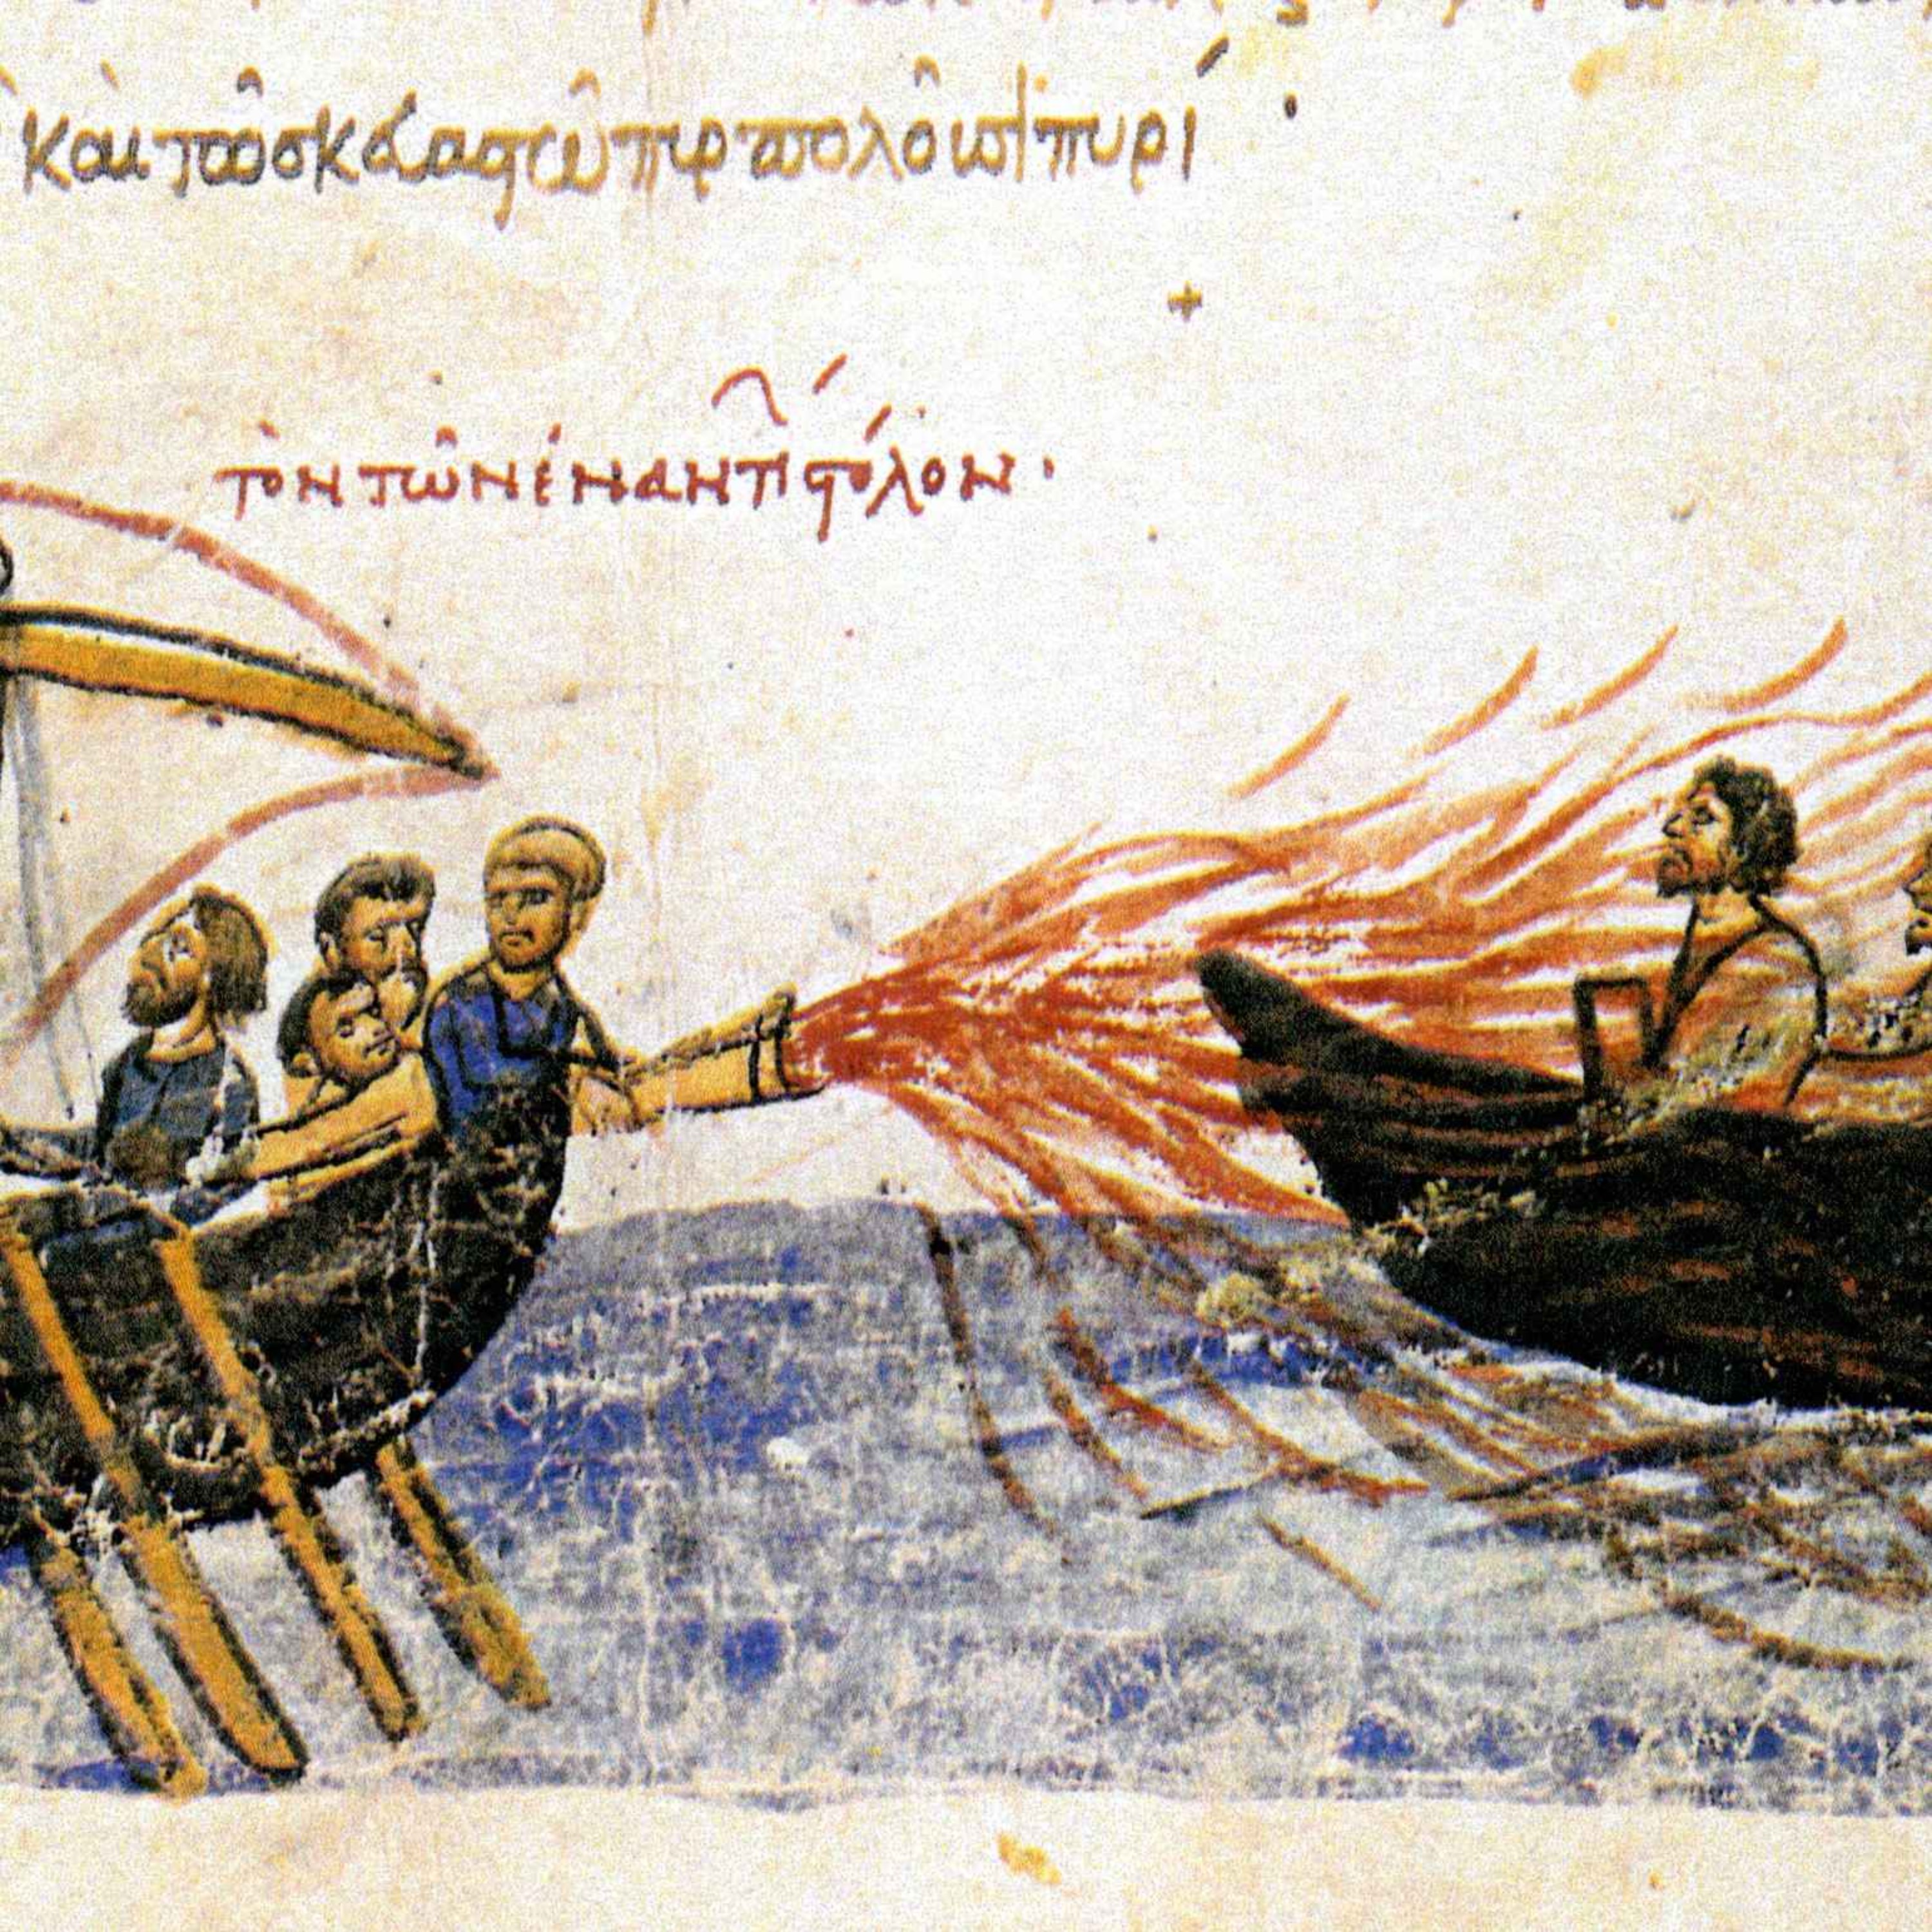 Il fuoco romano (671-678), ep. 147